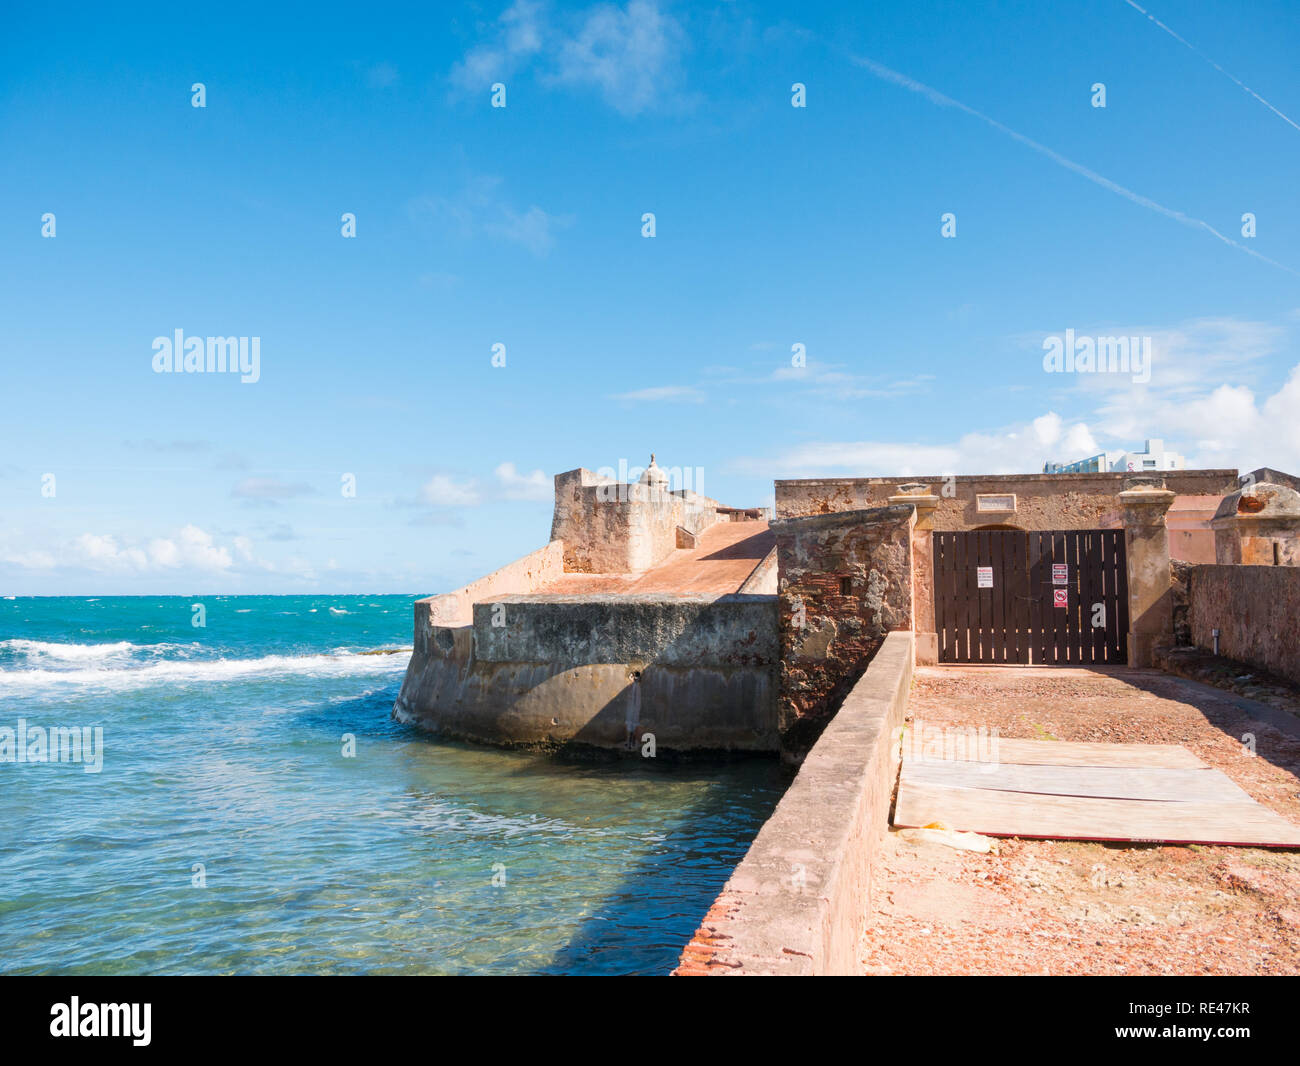 Fortin de San Geronimo de Boqueron (Fort San Geronimo), an abandonned fort in San Juan, Puerto Rico Stock Photo